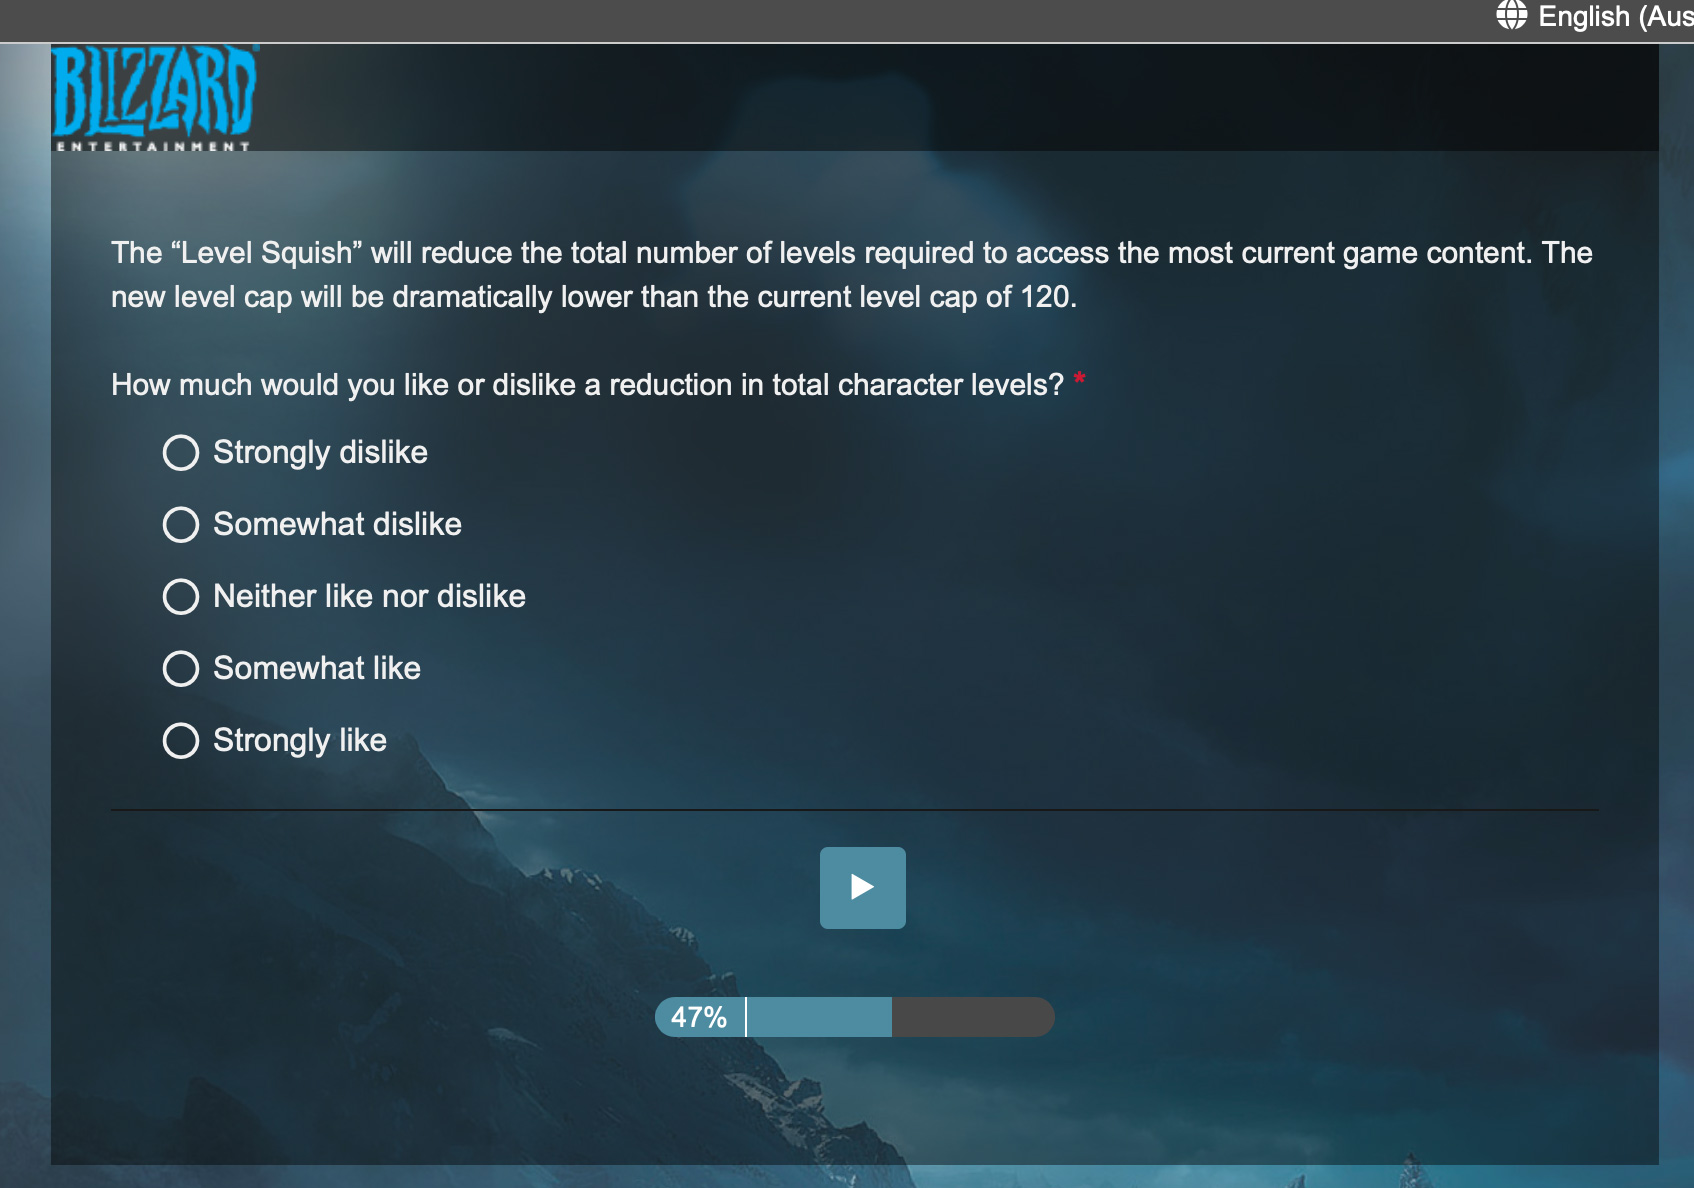 Questionnaire de Blizzard envoyé aux joueurs concernant le niveau maximum